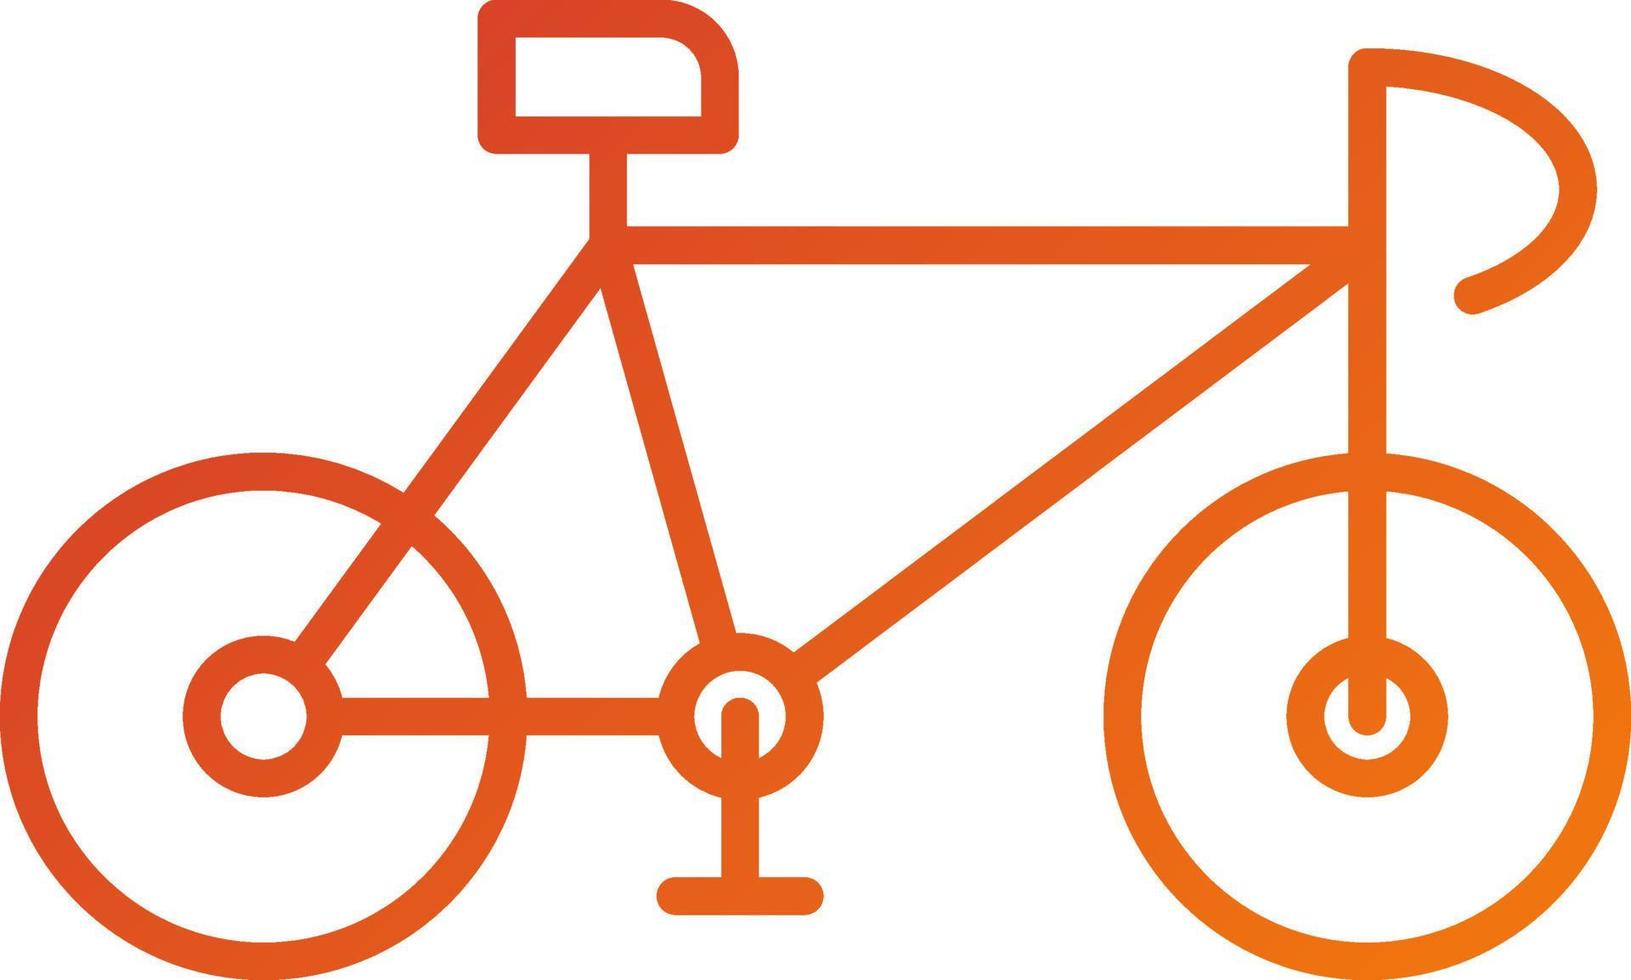 estilo de icono de bicicleta vector